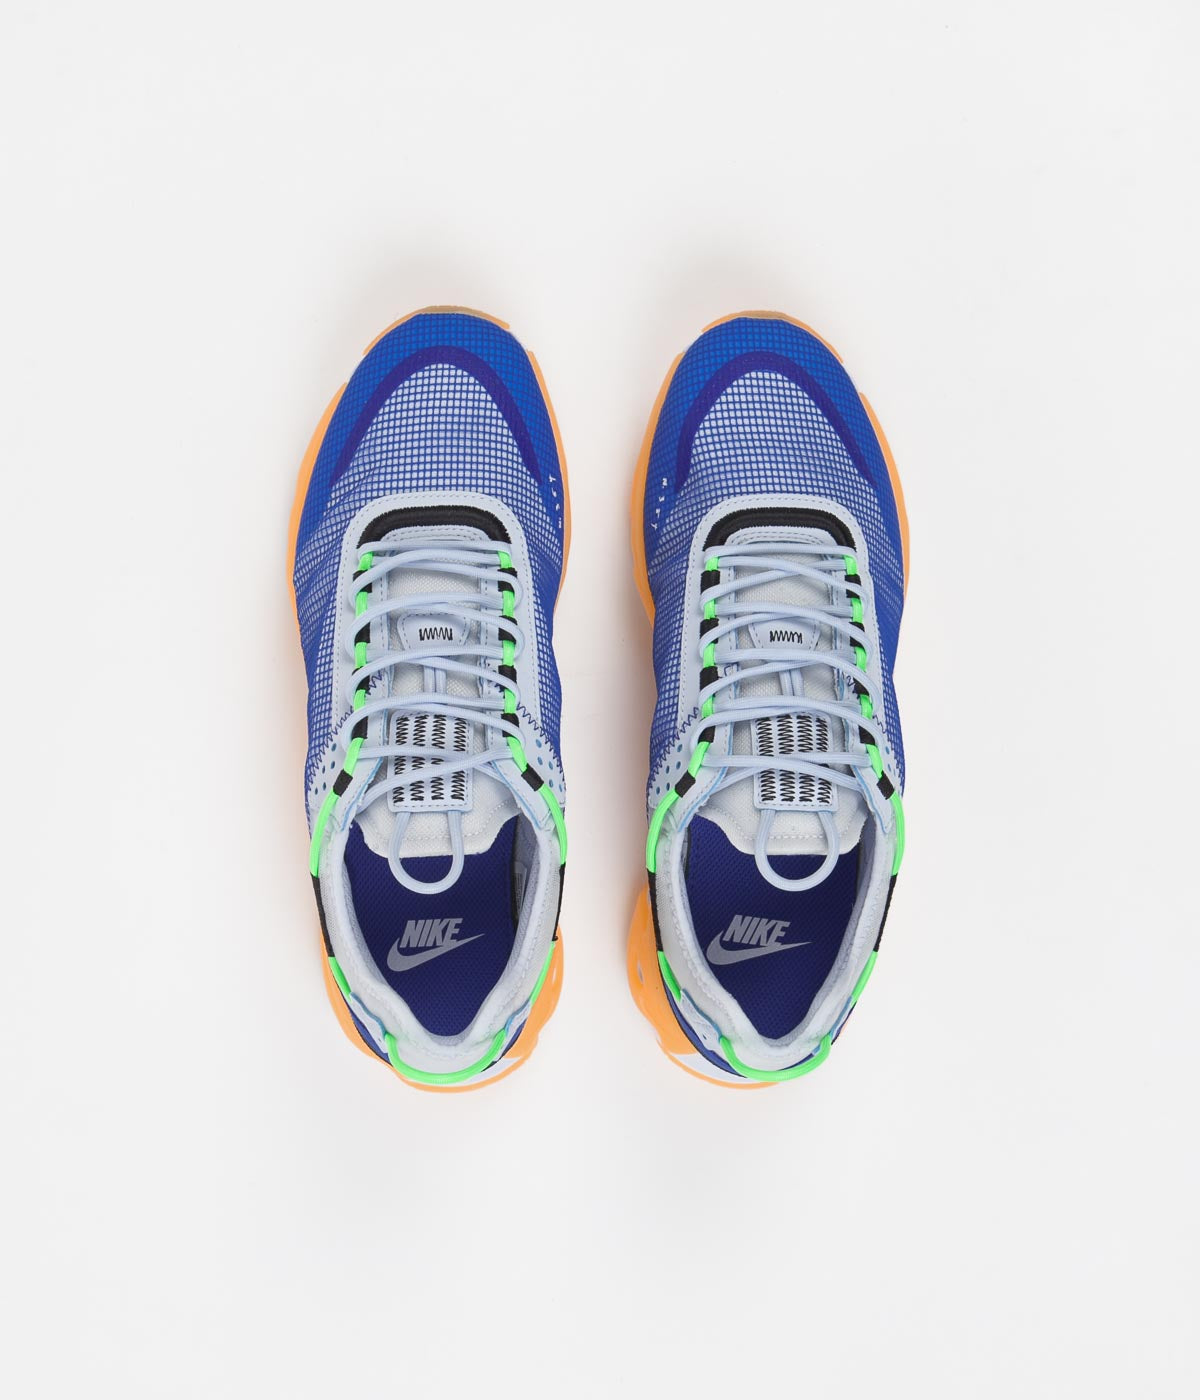 Nike React Live Premium Shoes - Football Grey / Laser Orange